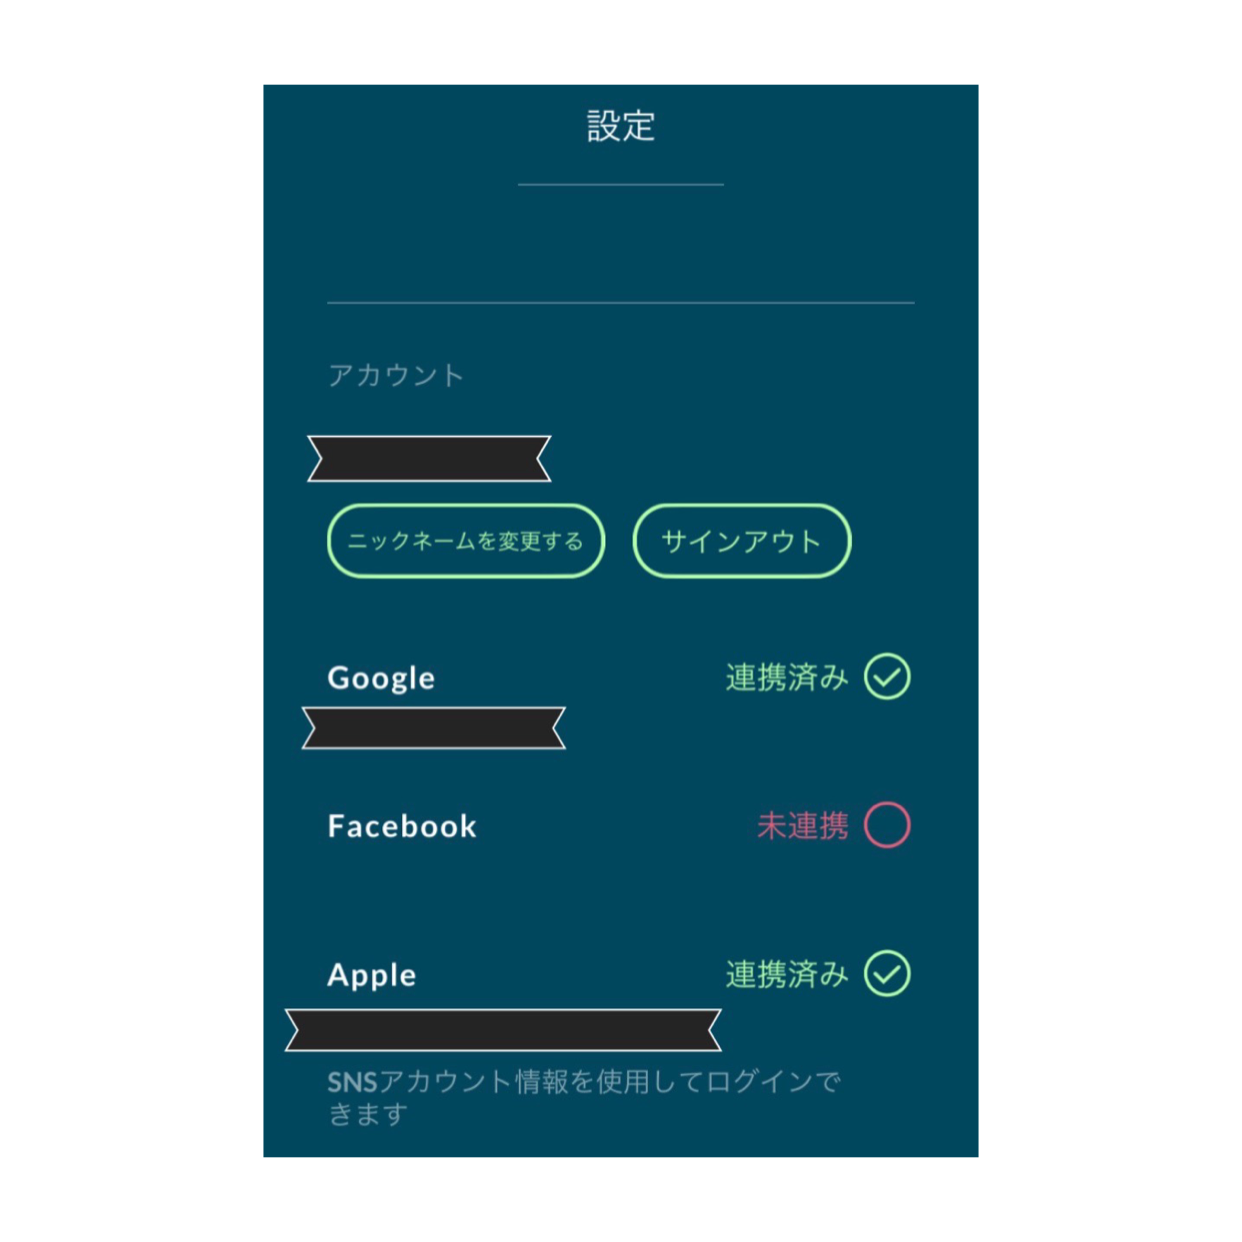 Iphone ポケモンgo プロモーションコードが入力できない サインインできない 場合の対処法 おかいもの忍者ブログ